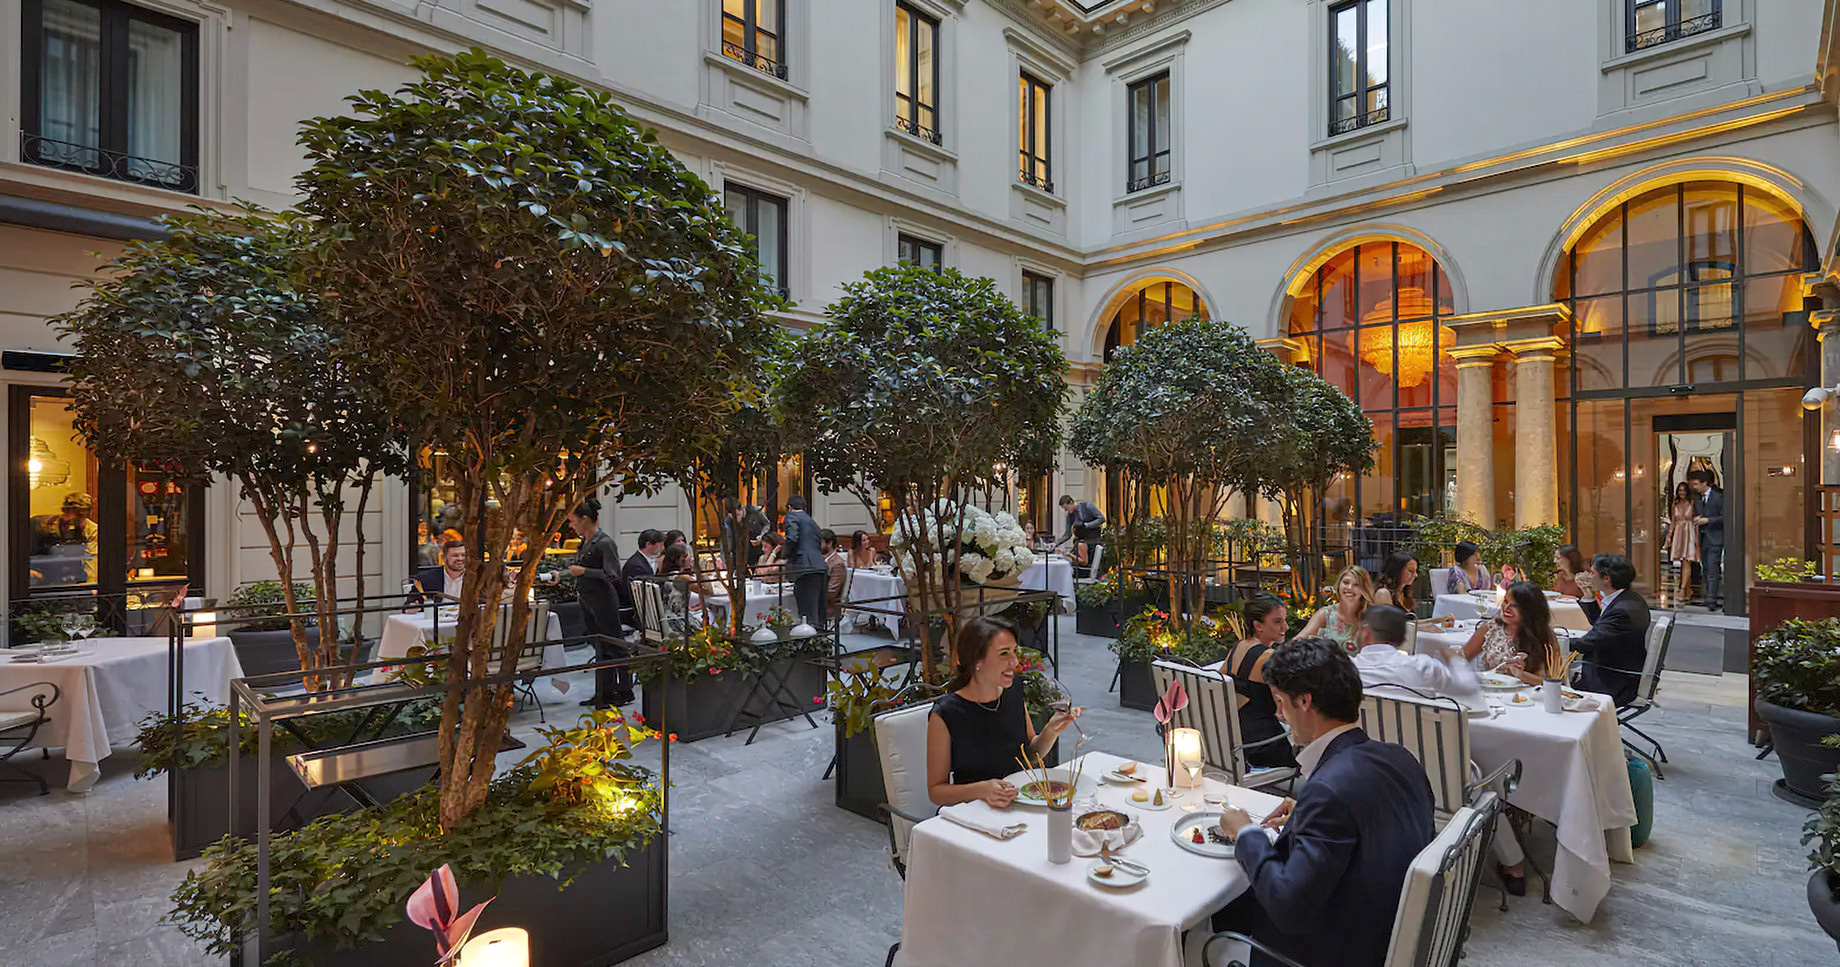 Mandarin Oriental, Milan Hotel – Milan, Italy – Seta Restaurant Courtyard Dining